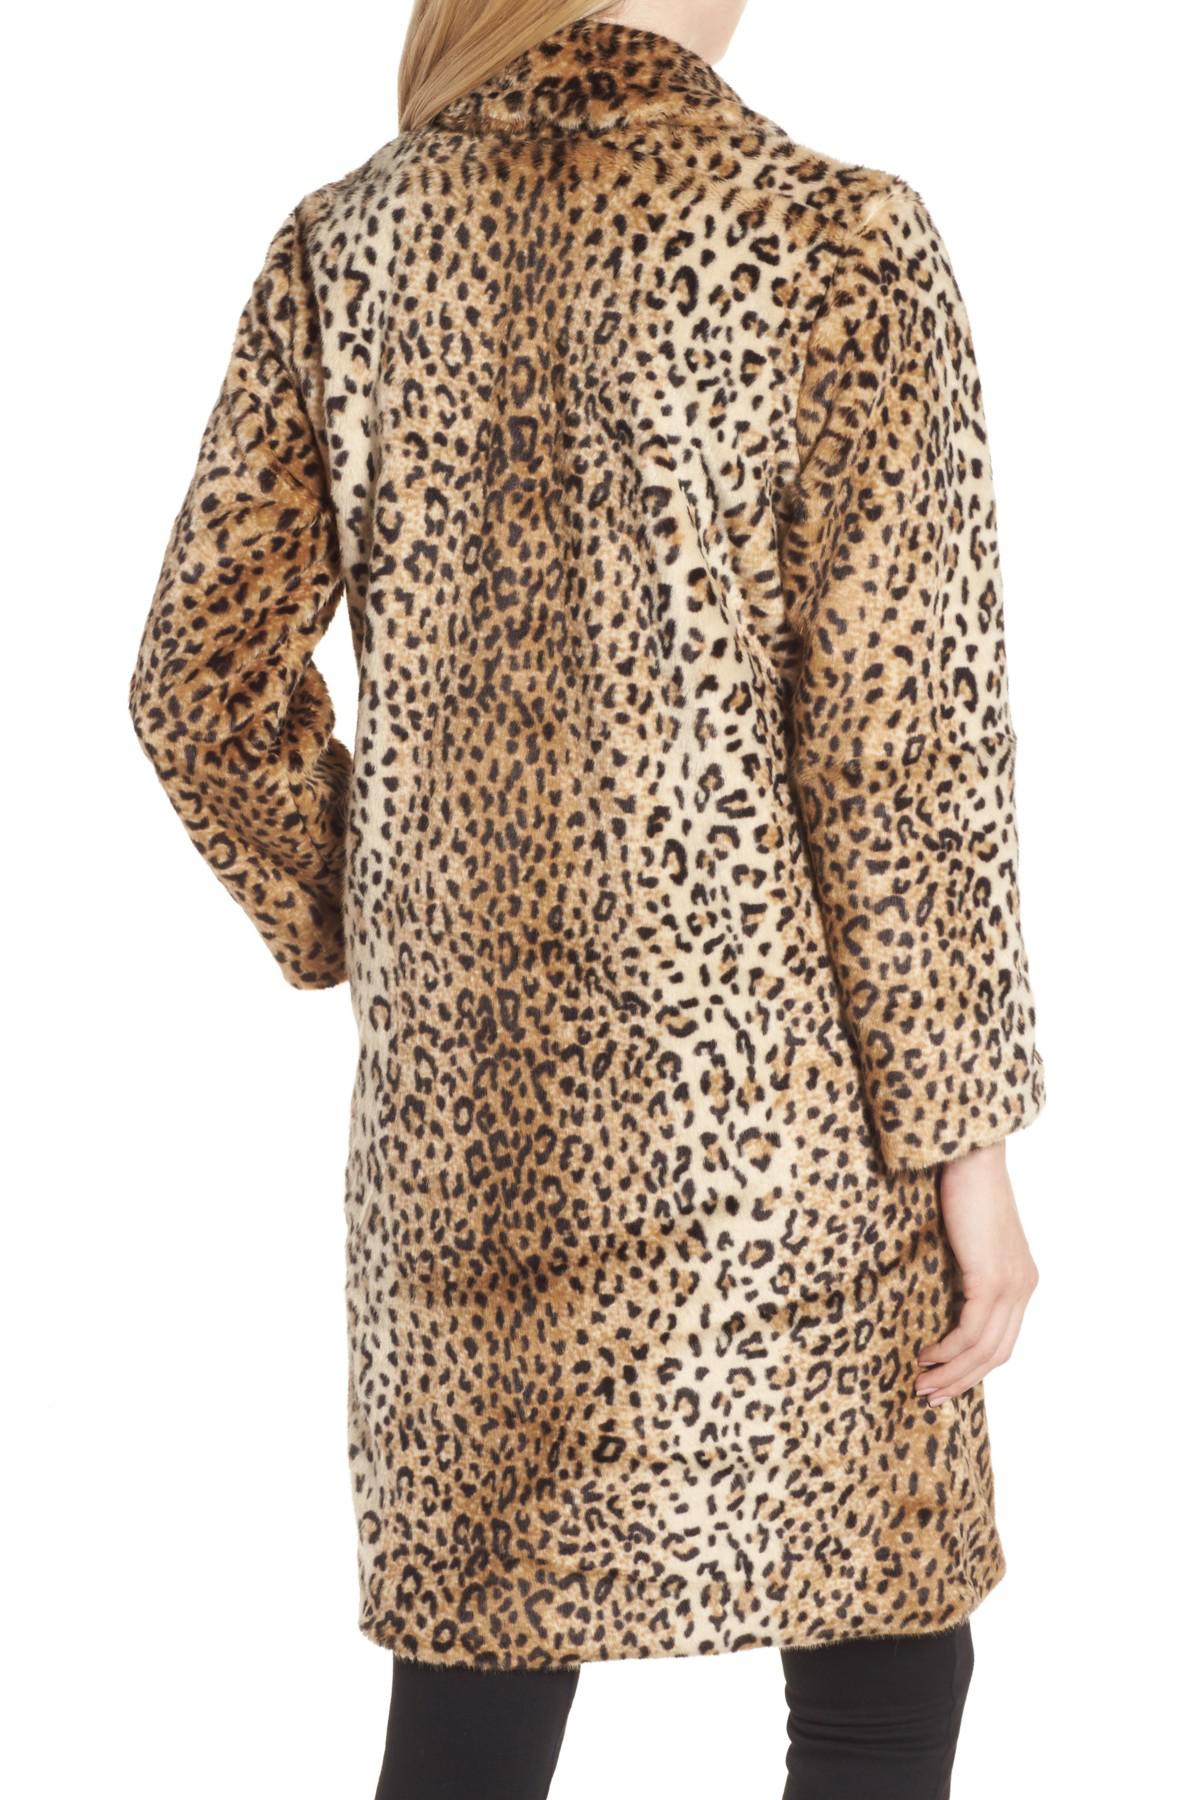 Chelsea28 Leopard Print Faux Fur Jacket in Tan Leopard Print (Brown) - Lyst